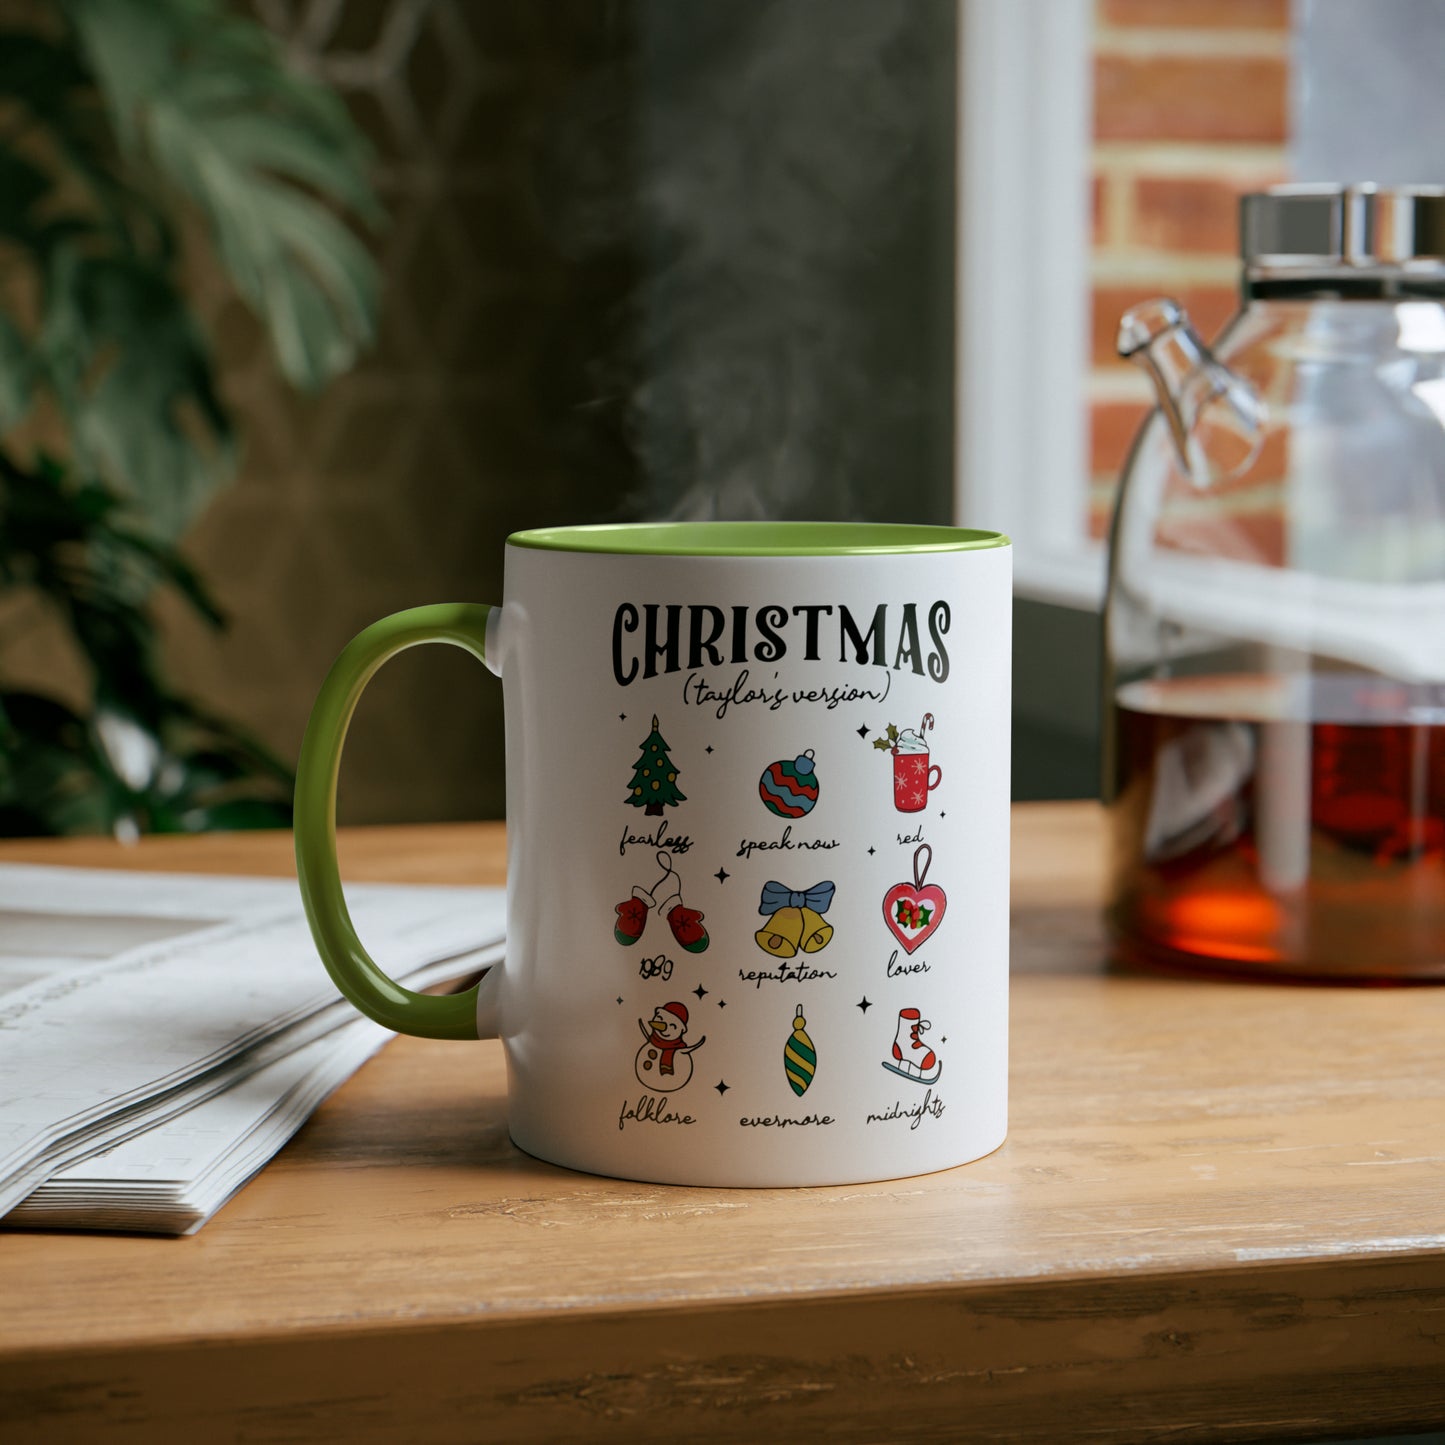 CHRISTMAS Taylor's Version / Taylor's Christmas Mug